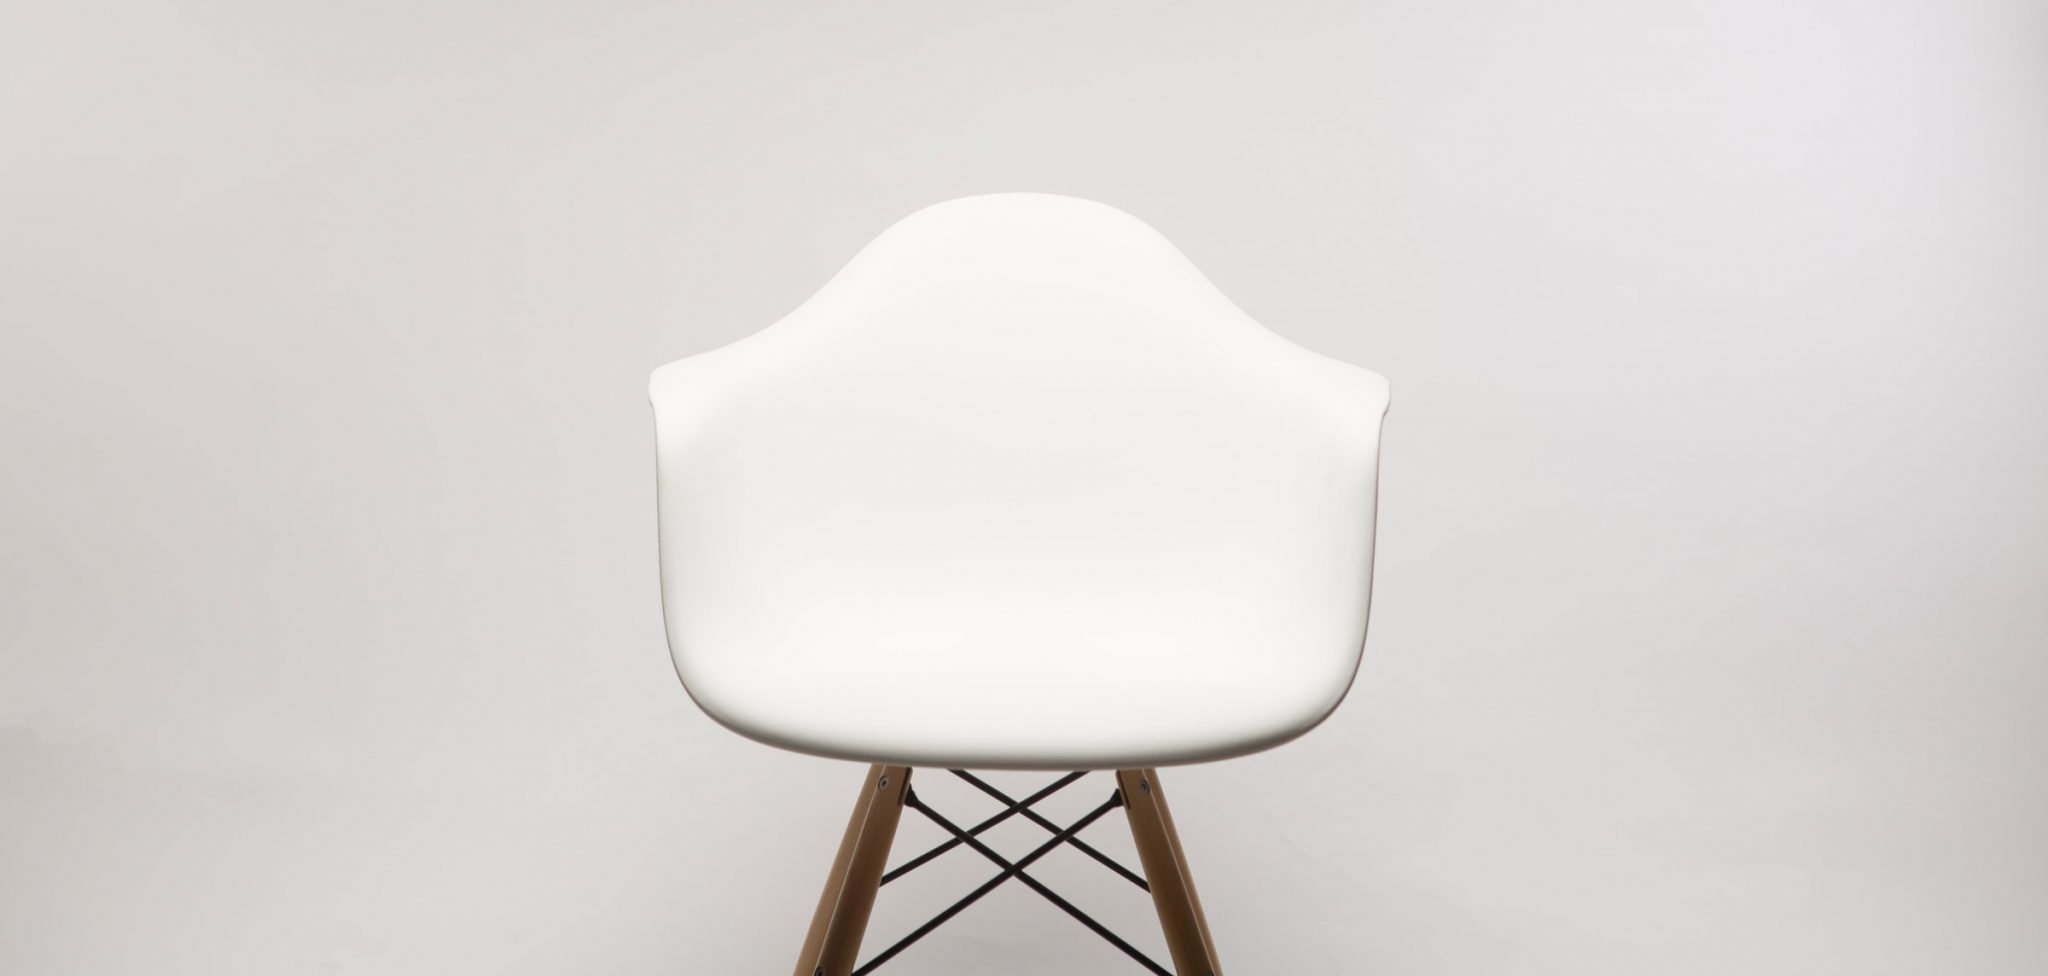 Eames Chair, ph: Dillon Mangum / Unsplash